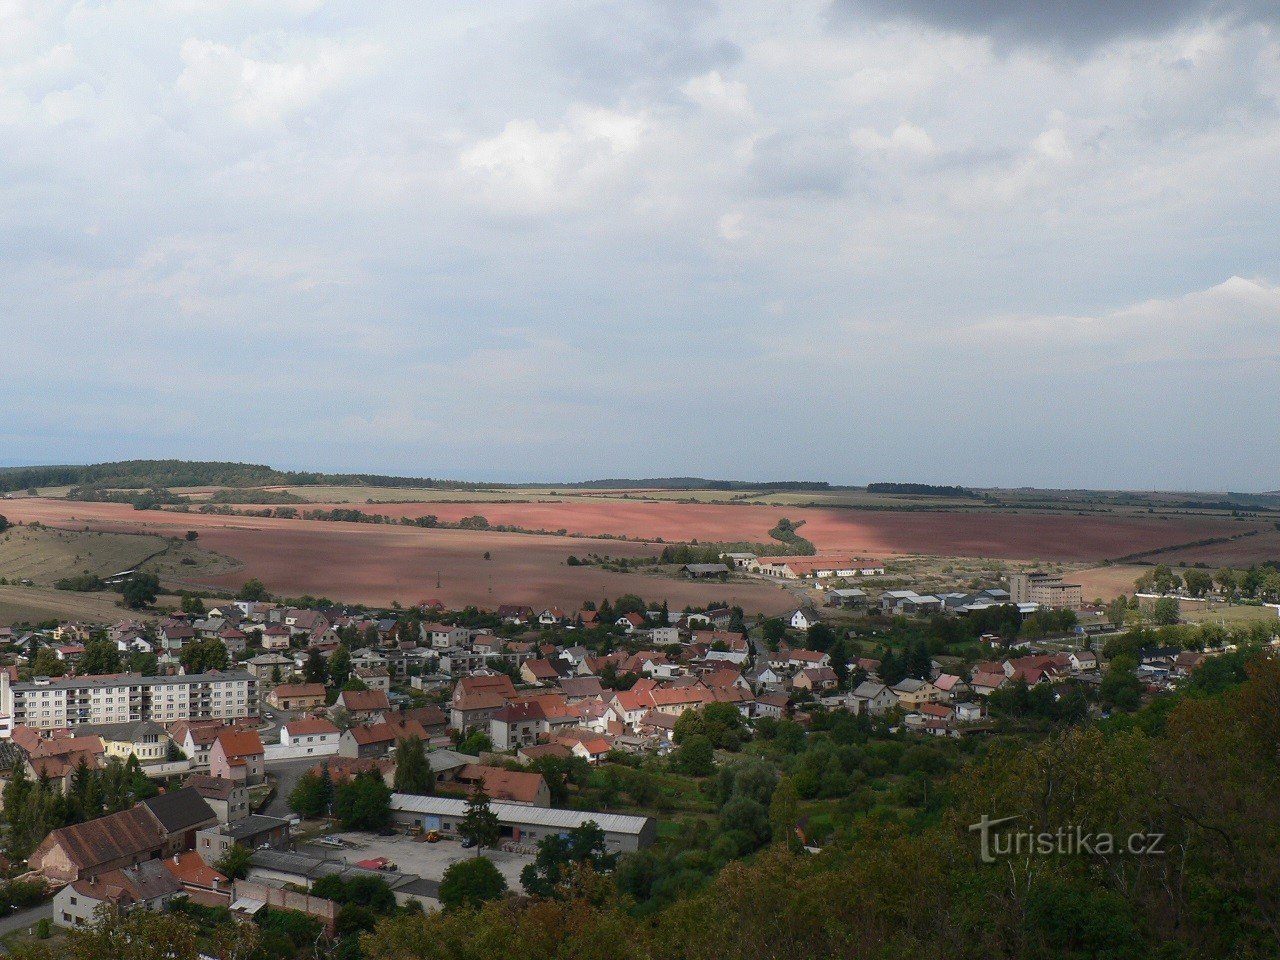 Kostelní vrch, nhìn từ tháp quan sát phía tây